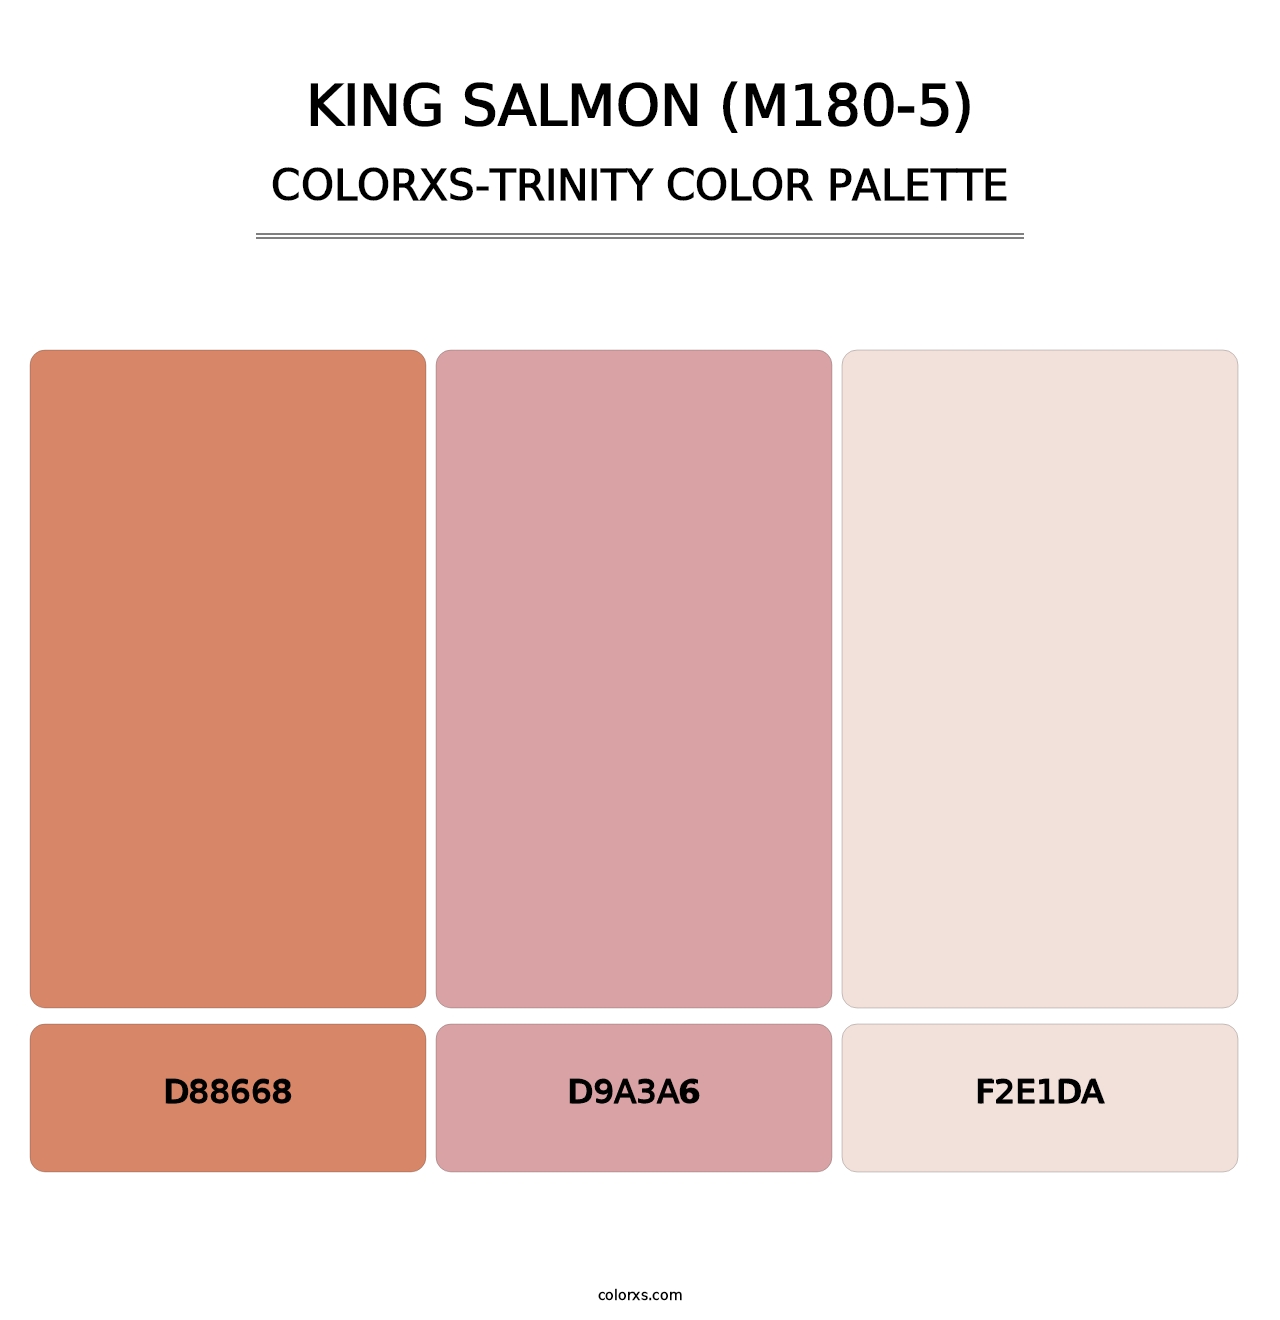 King Salmon (M180-5) - Colorxs Trinity Palette